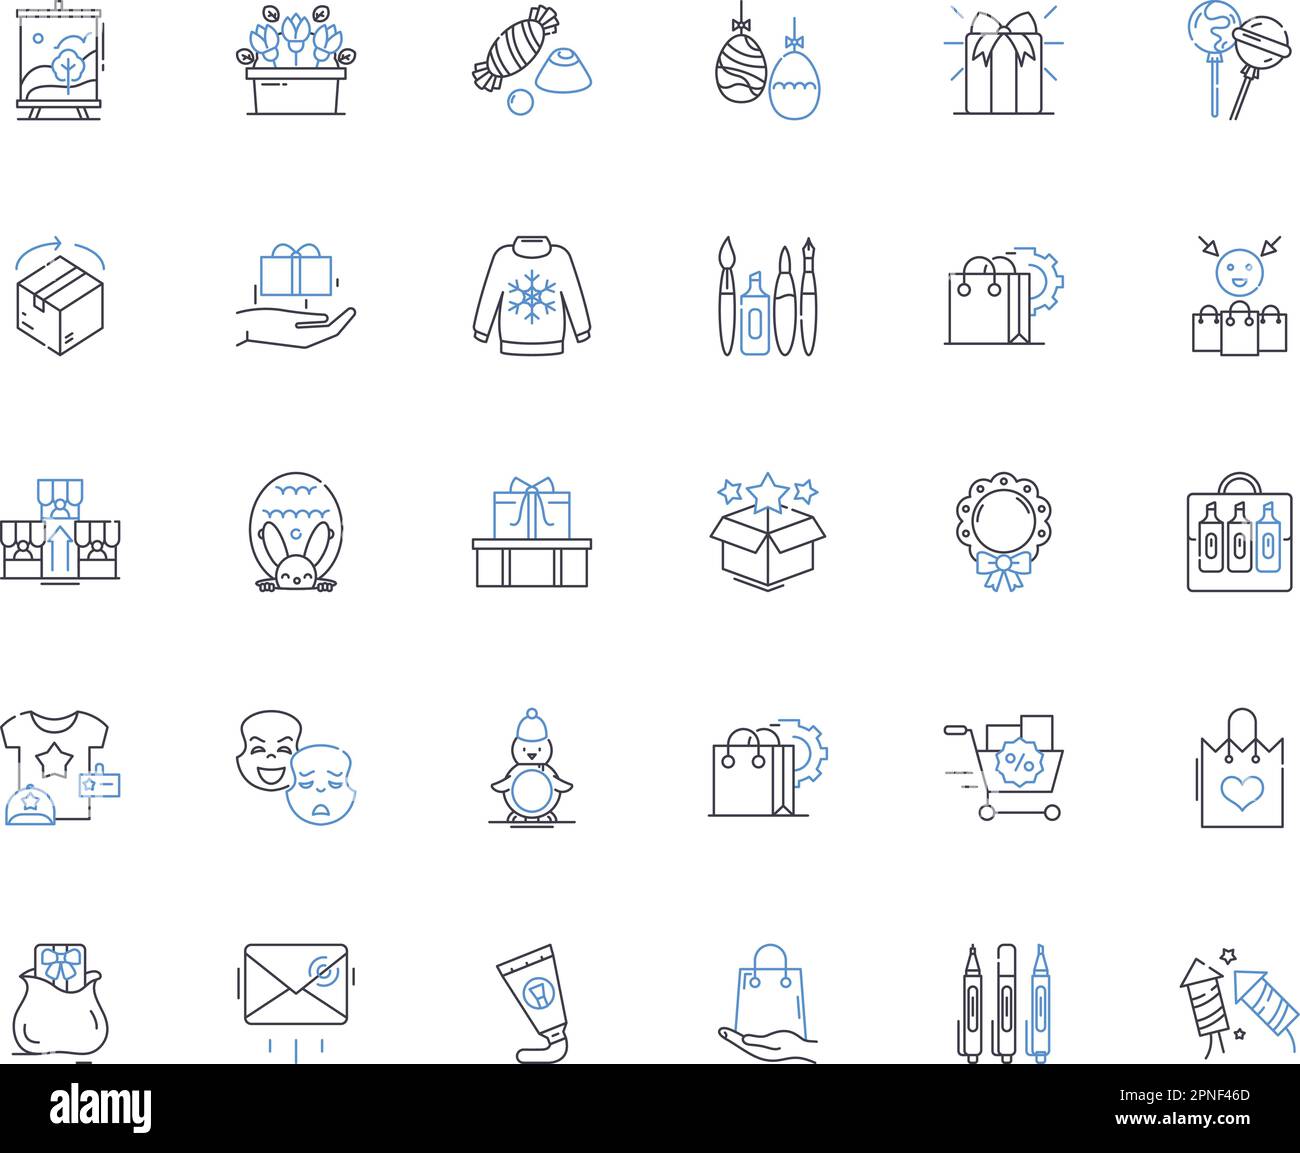 Zeigt eine Sammlung von Liniensymbolen an Geschenke, Überraschungen, Geschenke, Token, Pakete, Angebote, Souvenirvektor und lineare Illustration. Erinnerungsstücke Stock Vektor